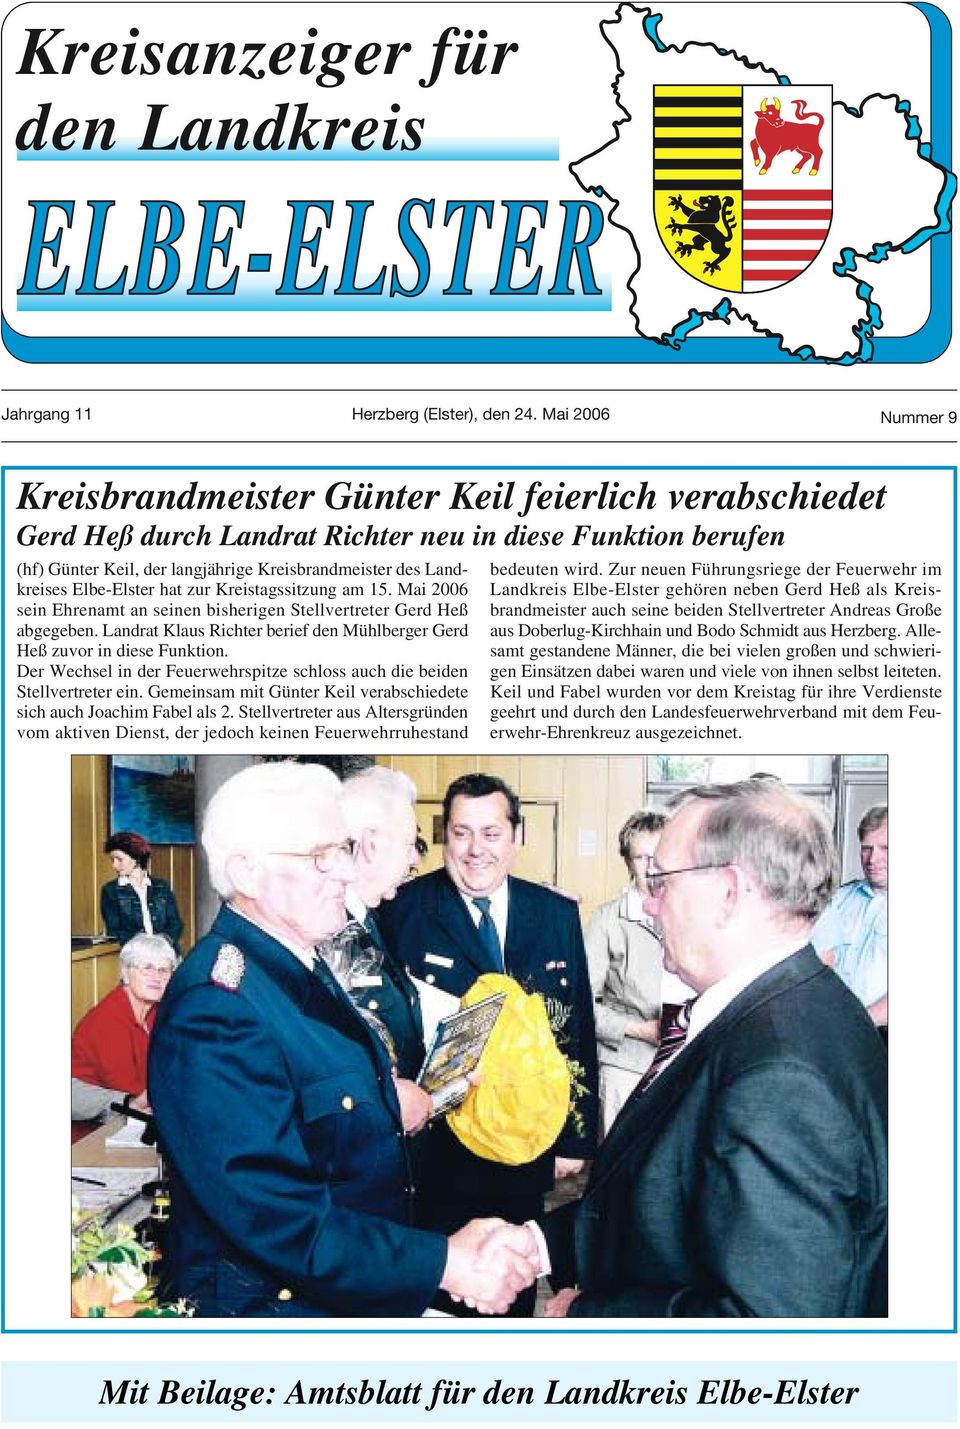 Landkreises Elbe-Elster hat zur Kreistagssitzung am 15. Mai 2006 sein Ehrenamt an seinen bisherigen Stellvertreter Gerd Heß abgegeben.